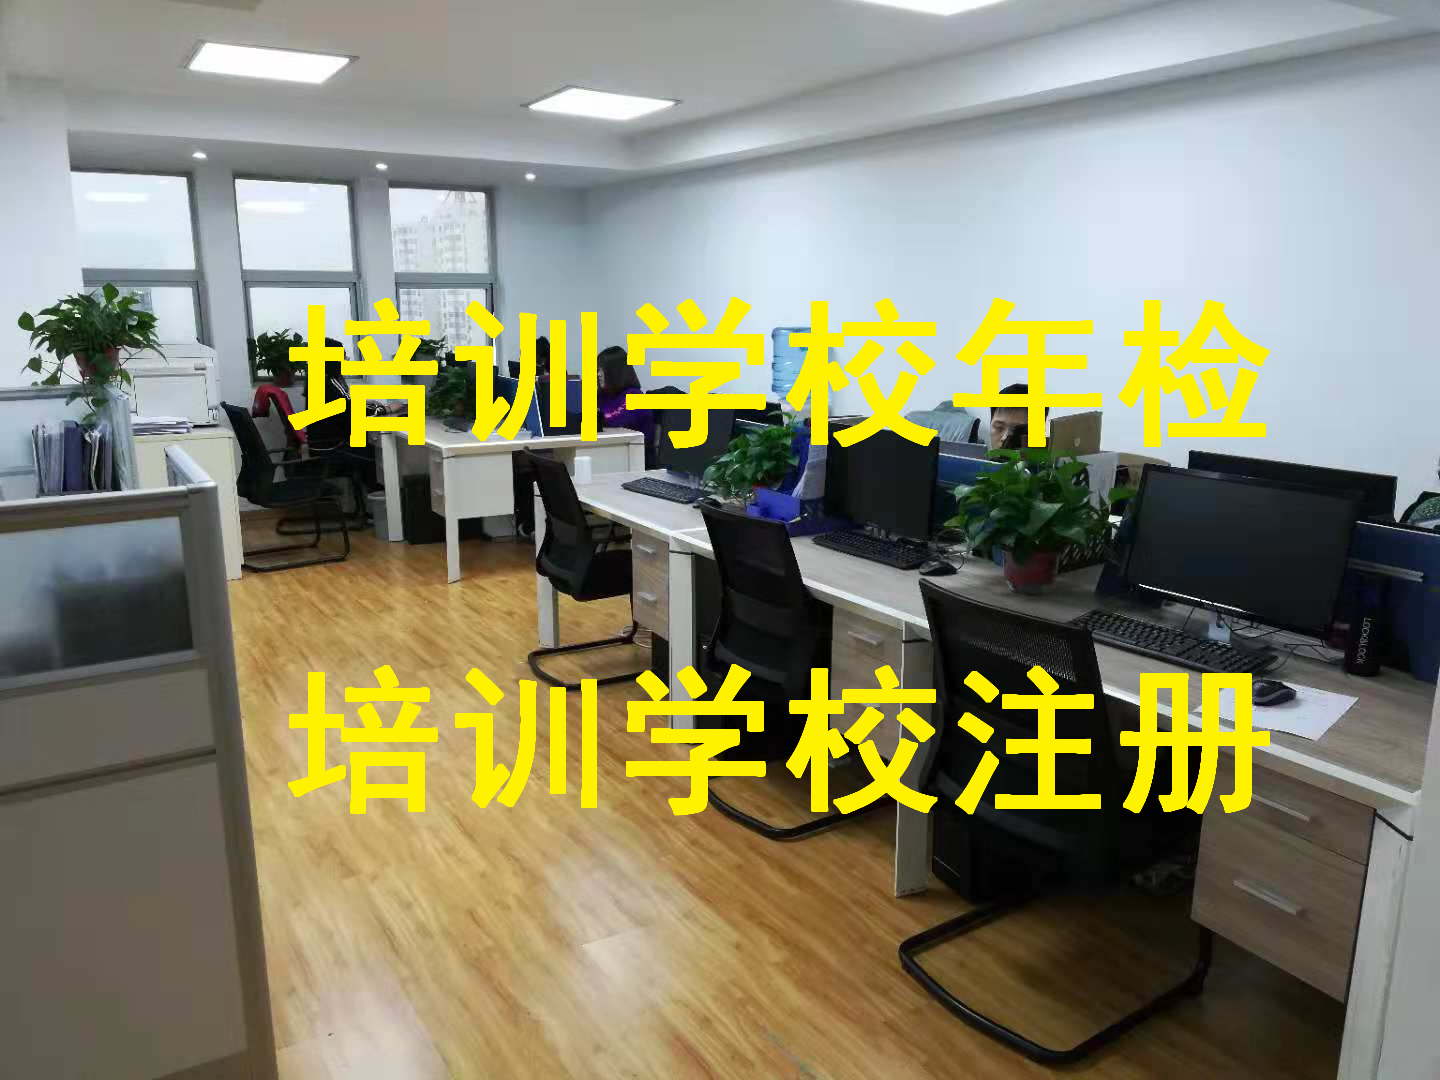 天津宁河区申请数学培训办学许可证时间多久